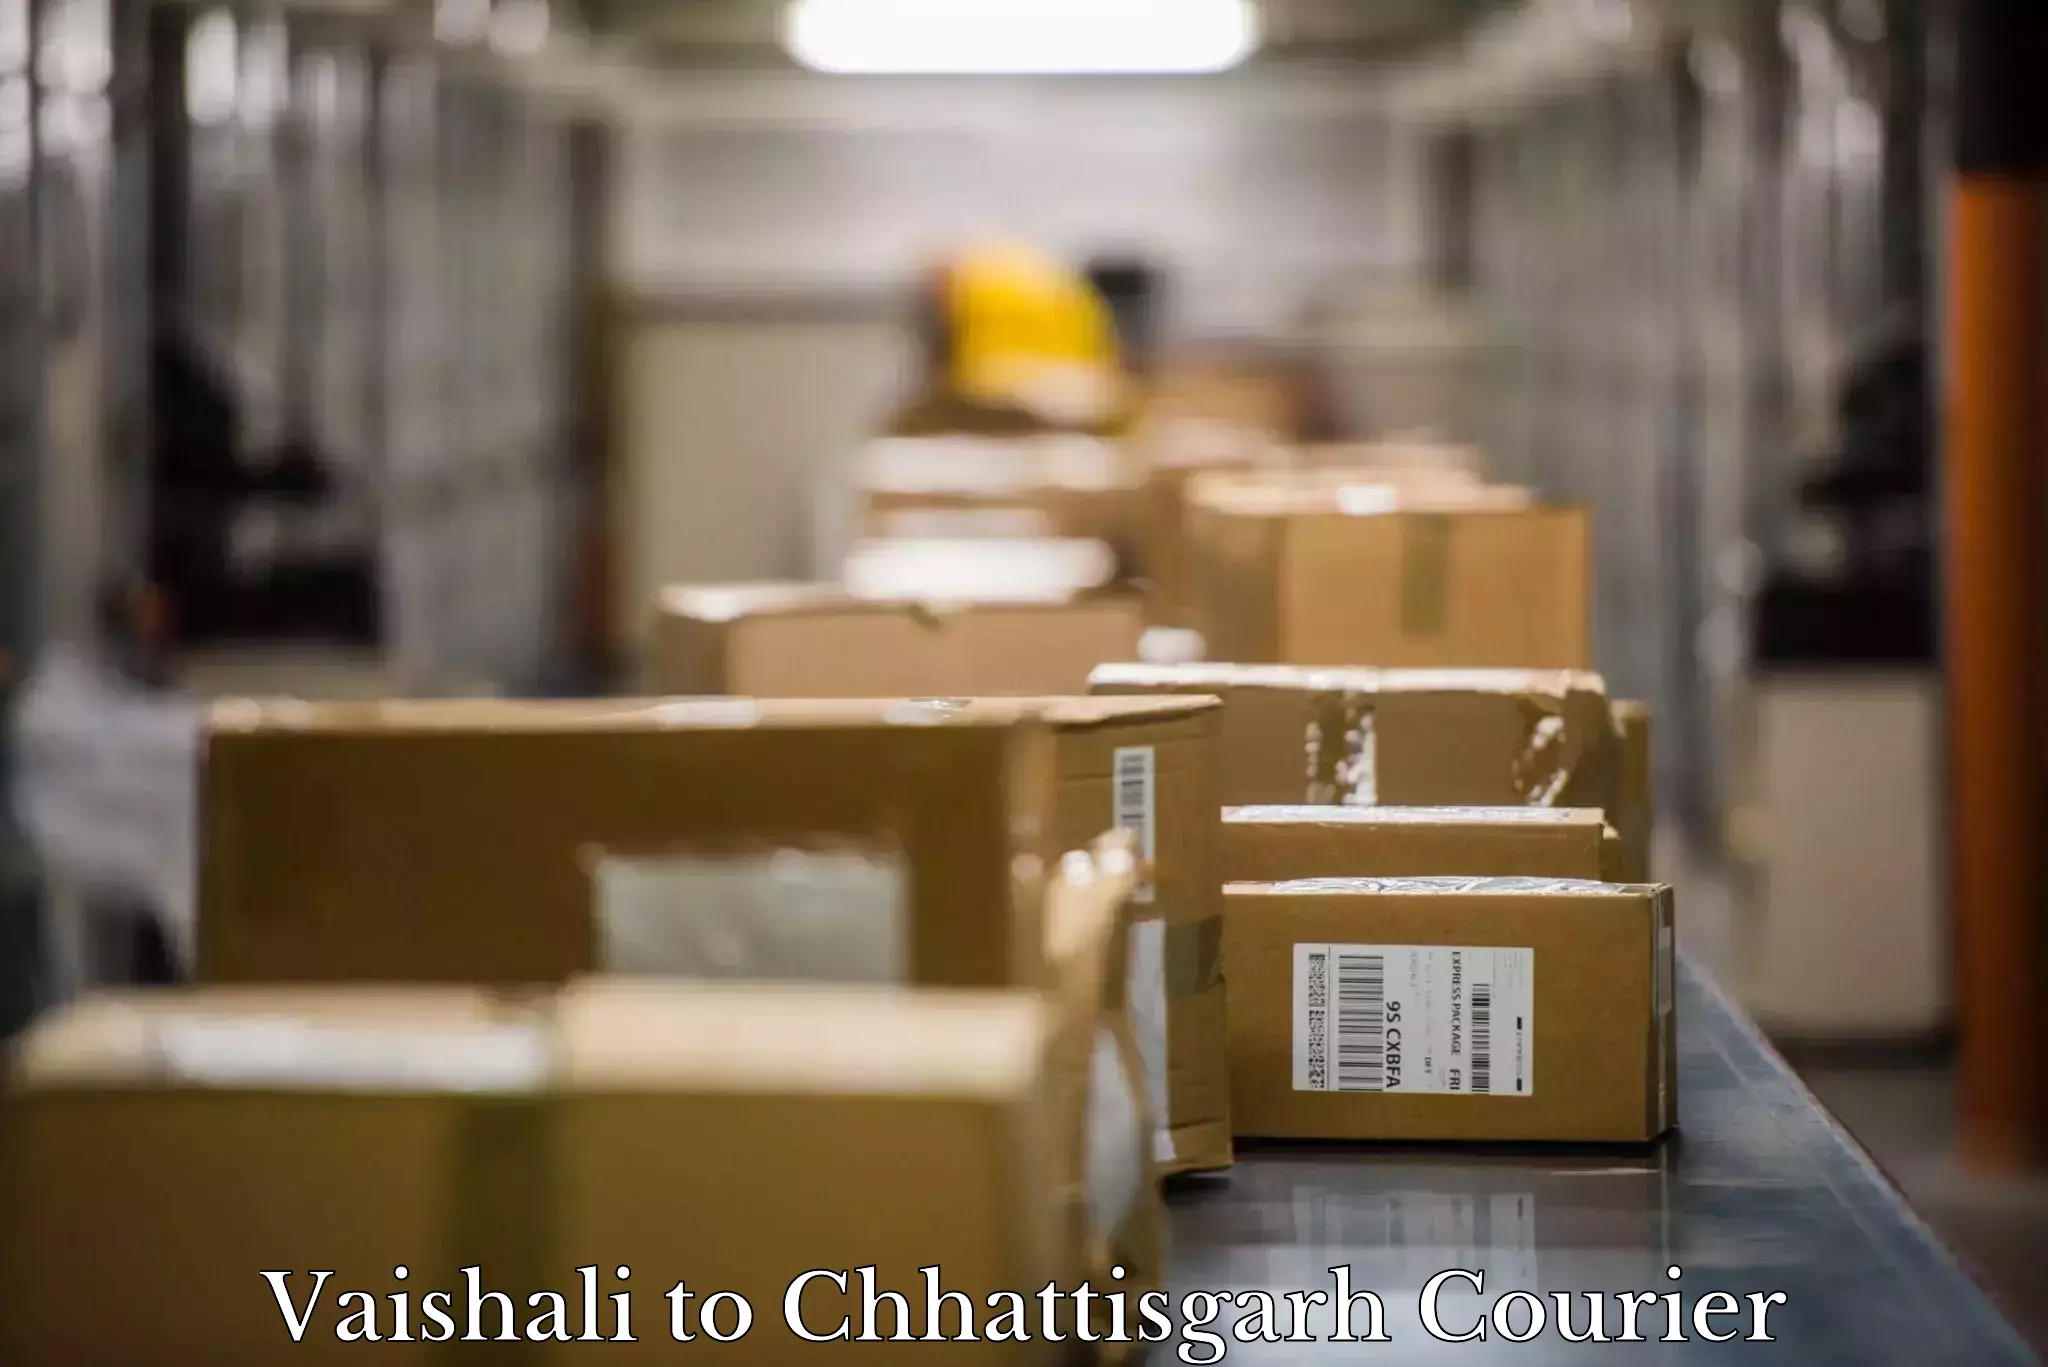 Furniture moving experts Vaishali to Raigarh Chhattisgarh